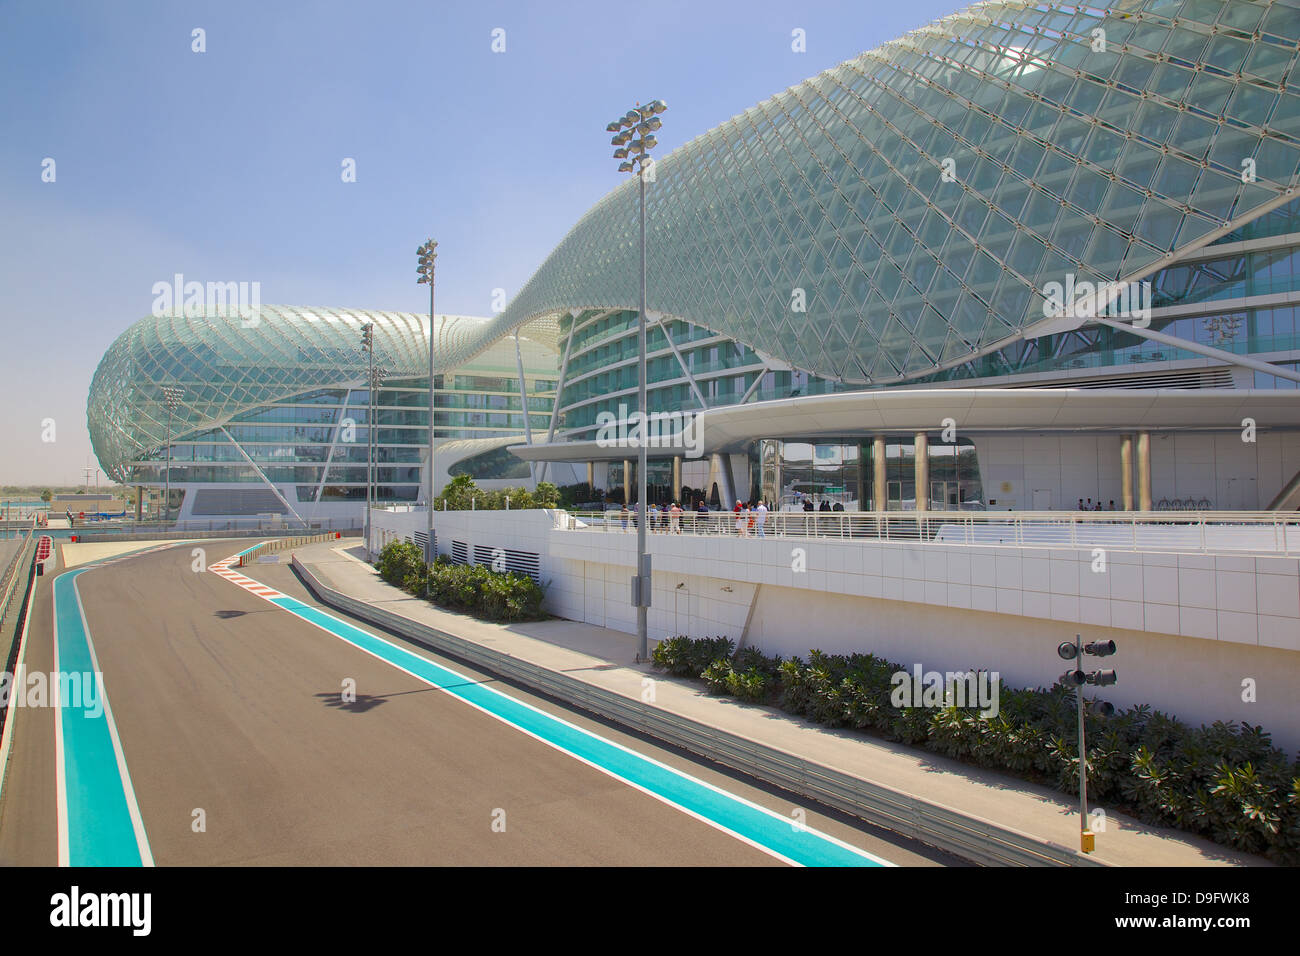 Viceroy Hotel und Formel 1 Rennstrecke Yas Island, Abu Dhabi, Vereinigte Arabische Emirate, Naher Osten Stockfoto